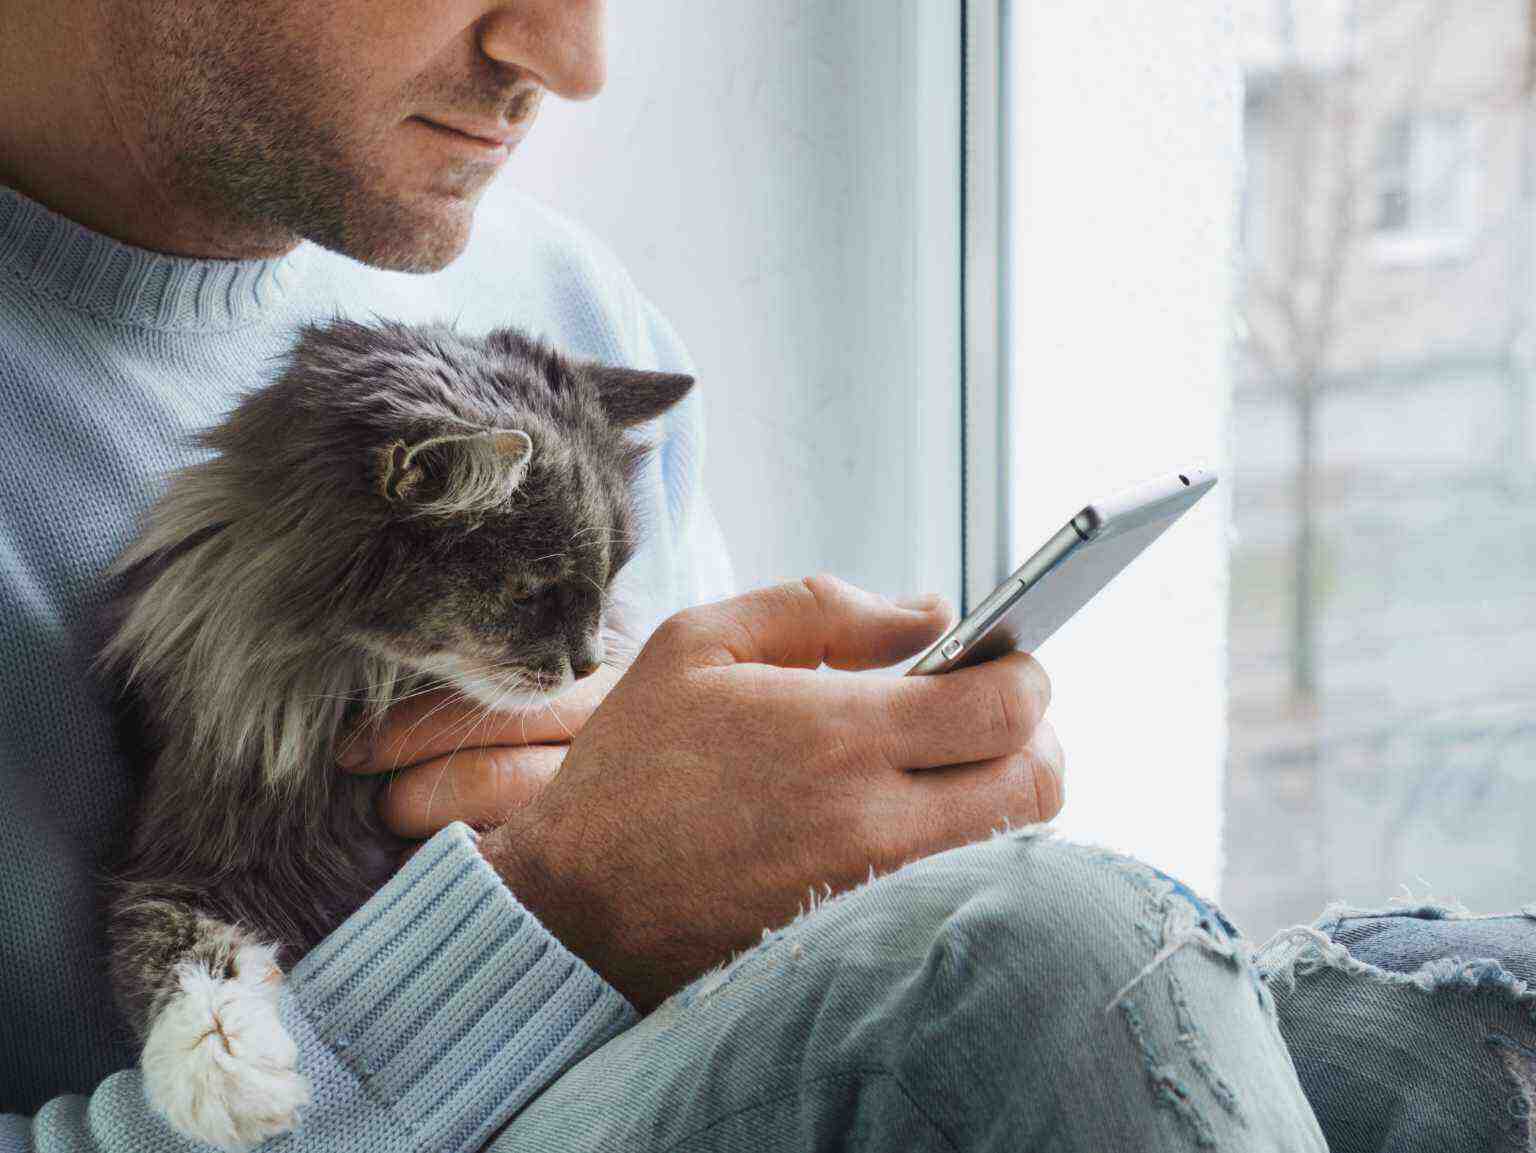 Un hombre sostiene a su gato mientras lee en su teléfono inteligente frente a una ventana.